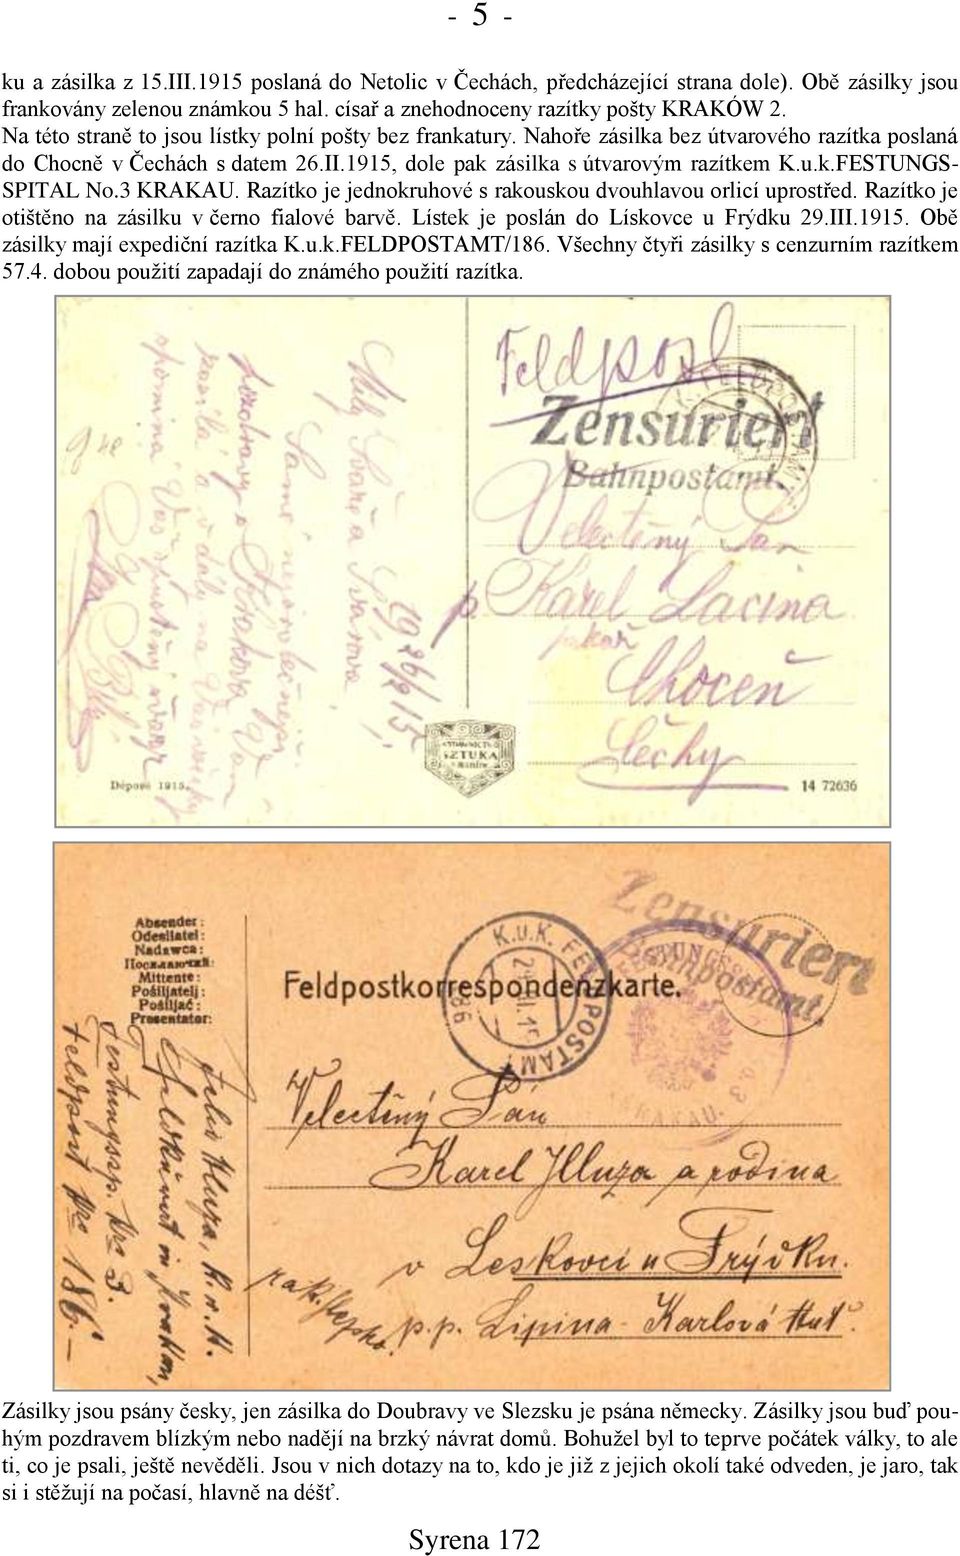 3 KRAKAU. Razítko je jednokruhové s rakouskou dvouhlavou orlicí uprostřed. Razítko je otińtěno na zásilku v černo fialové barvě. Lístek je poslán do Lískovce u Frýdku 29.III.1915.